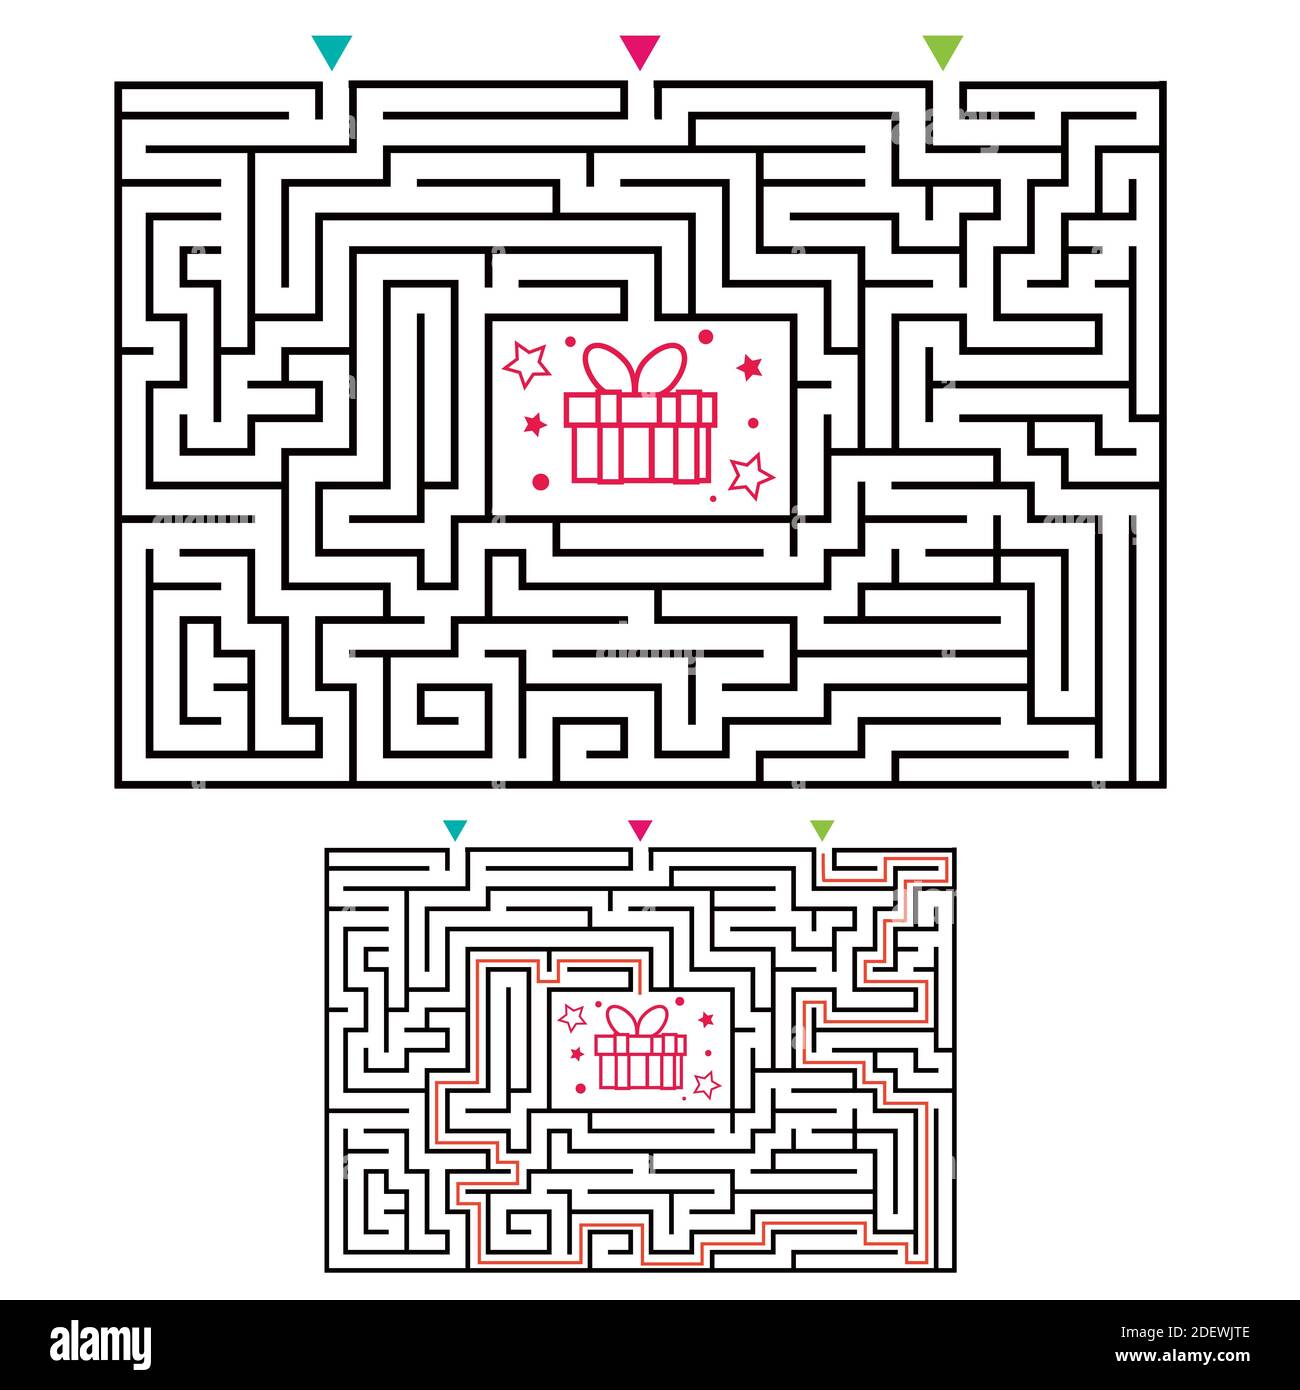 Labirinto rettangolare gioco labirinto per bambini. Logica labirintica. Tre ingressi e una strada a destra per andare. Immagine piatta vettoriale Illustrazione Vettoriale